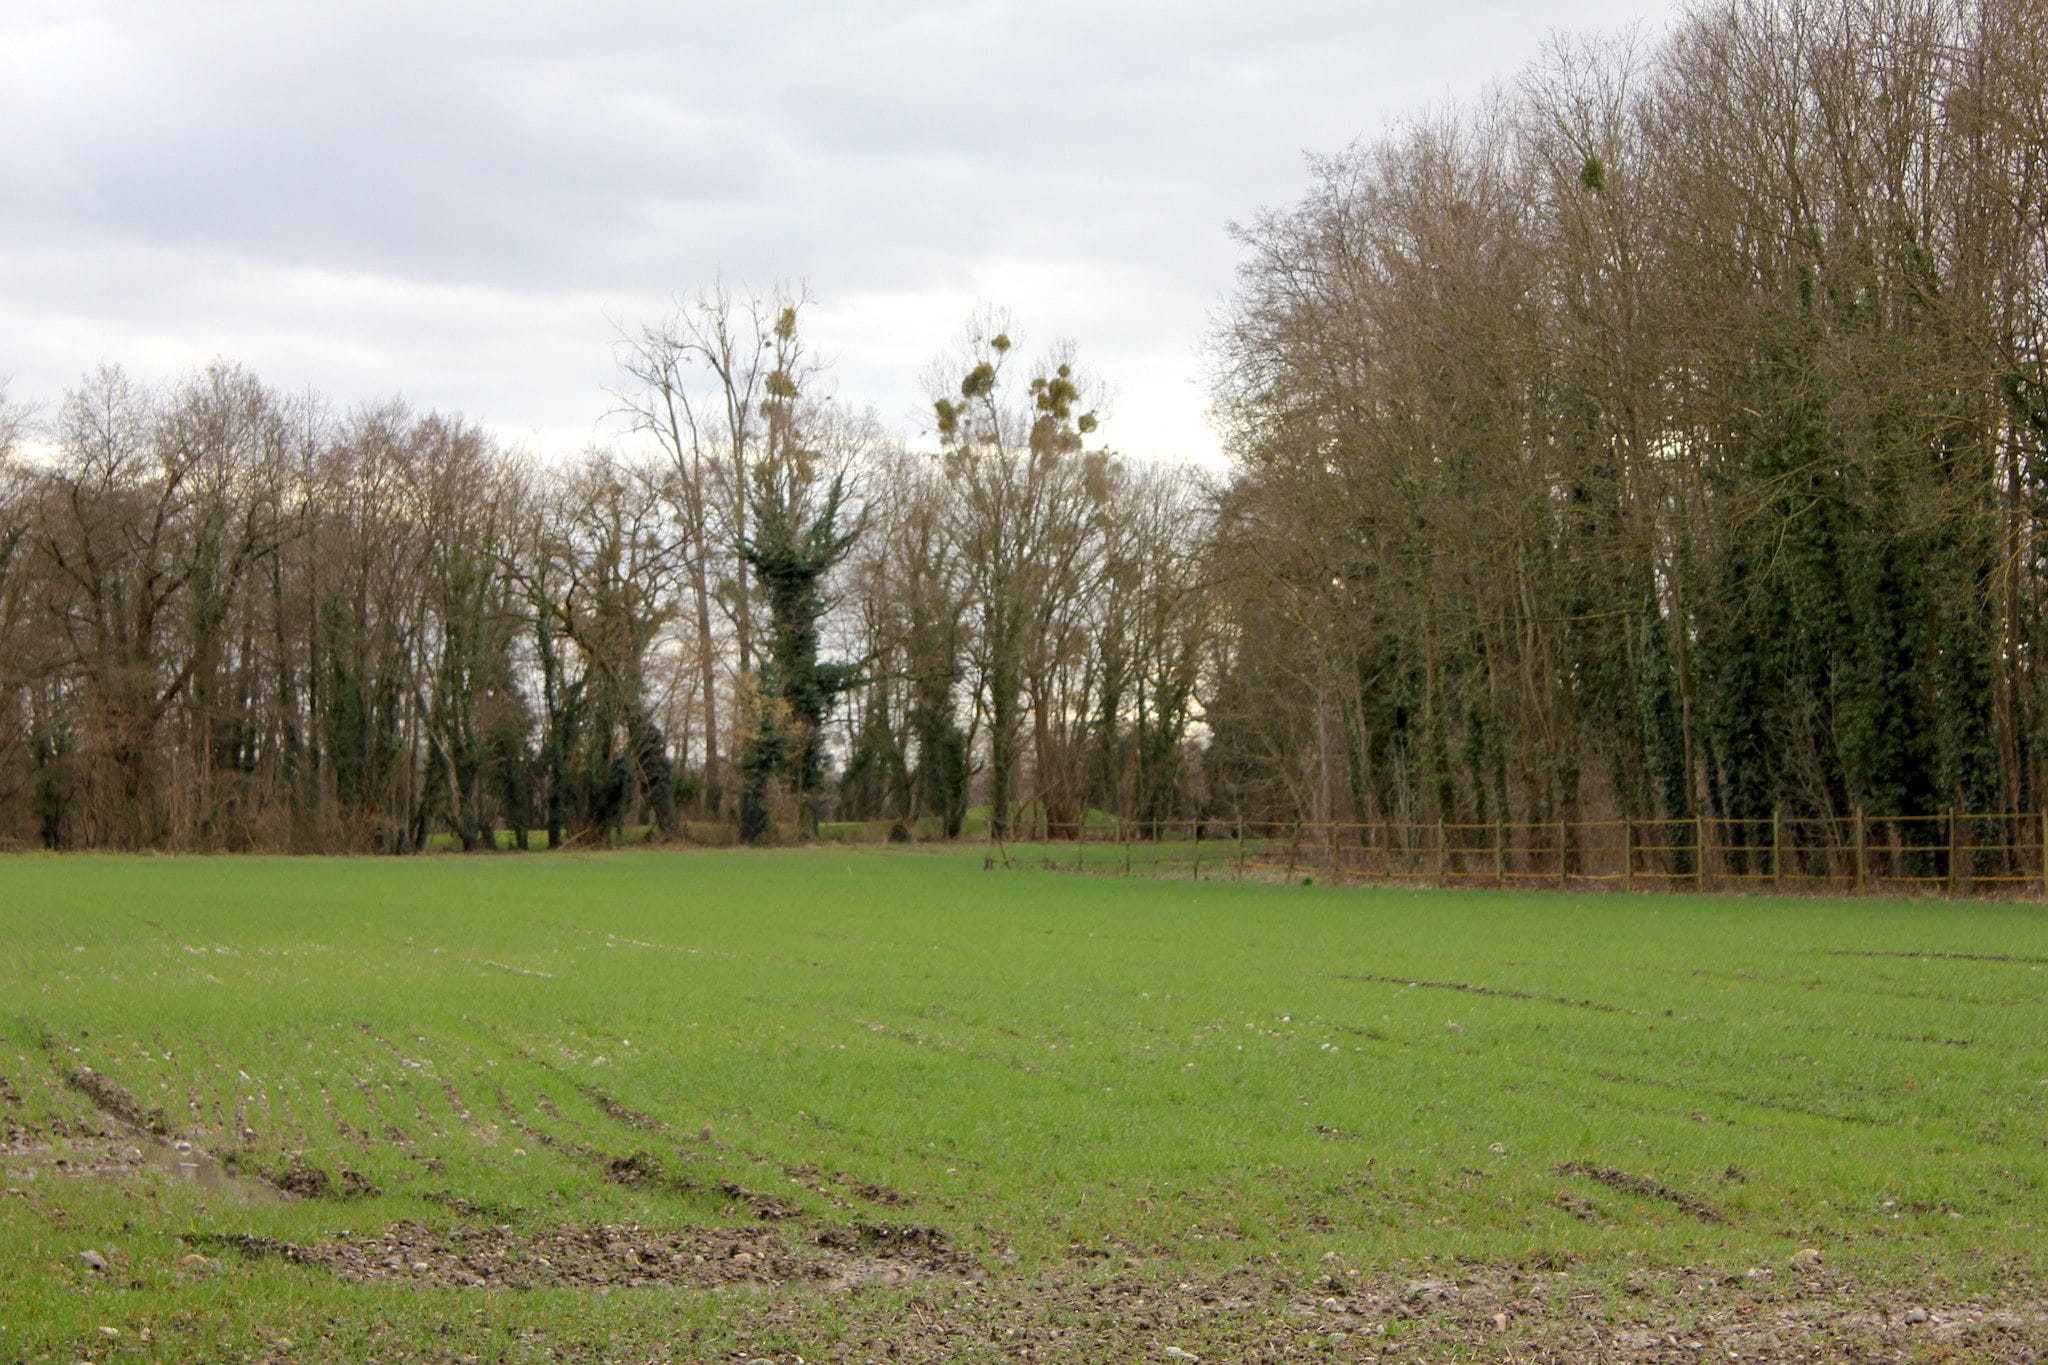 Le futur site du groupe Mack à Plobsheim est aujourd'hui un champ semé de blé. Au fond, le golf du Kempferhof. Photo Nathalie Stey